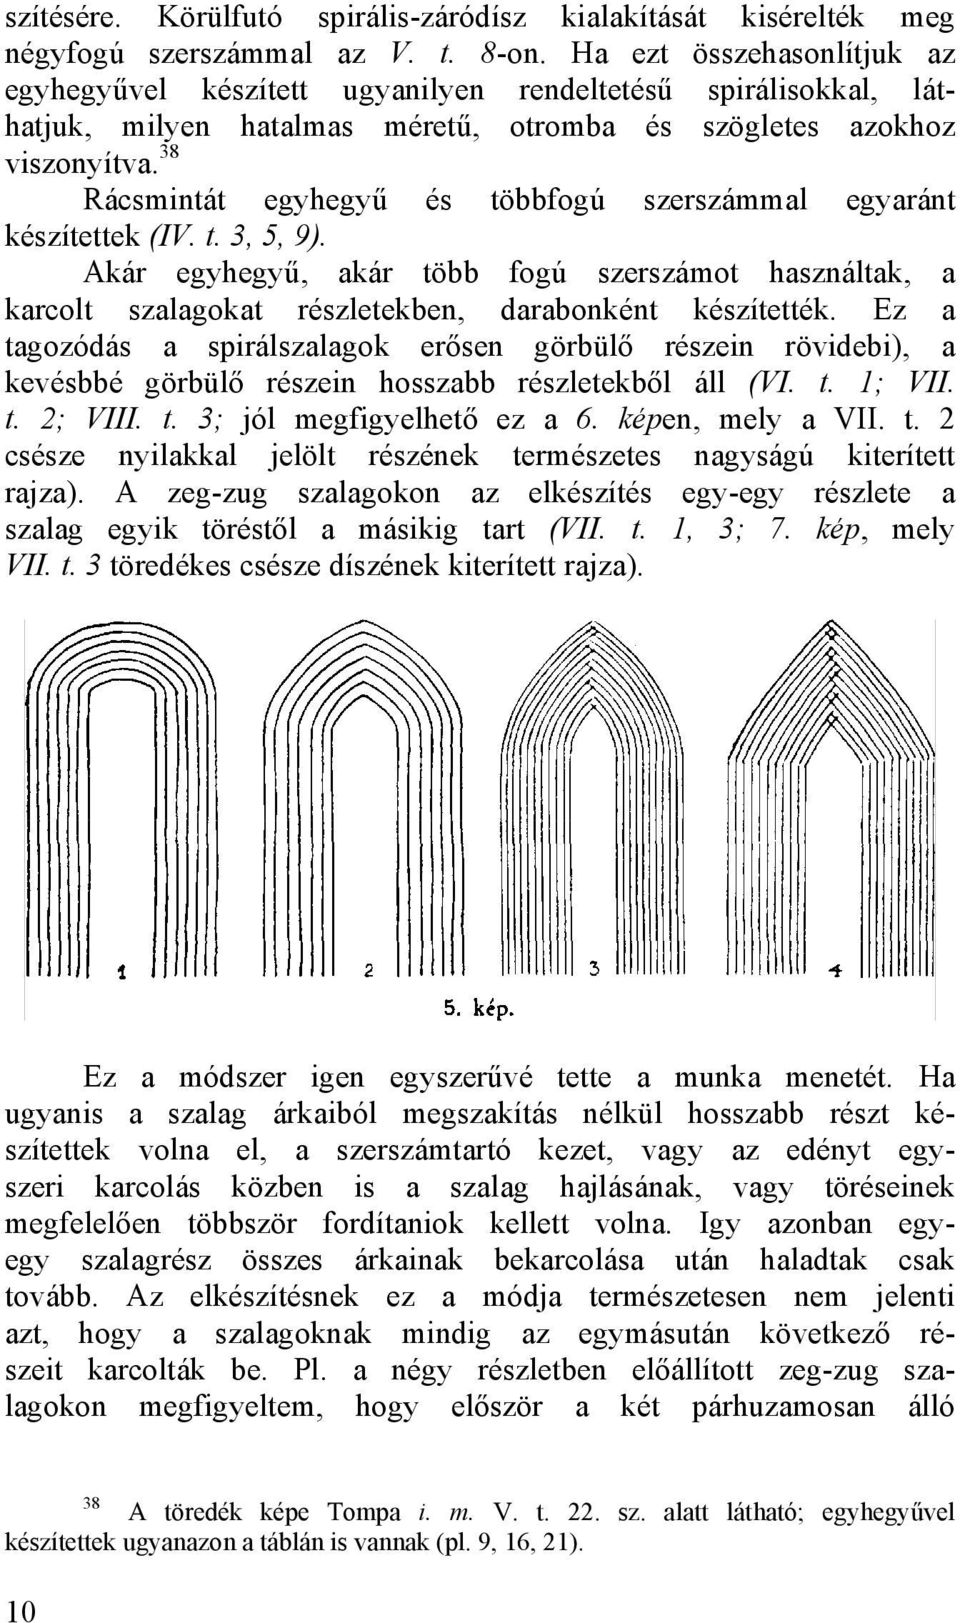 38 Rácsmintát egyhegyű és többfogú szerszámmal egyaránt készítettek (IV. t. 3, 5, 9). Akár egyhegyű, akár több fogú szerszámot használtak, a karcolt szalagokat részletekben, darabonként készítették.